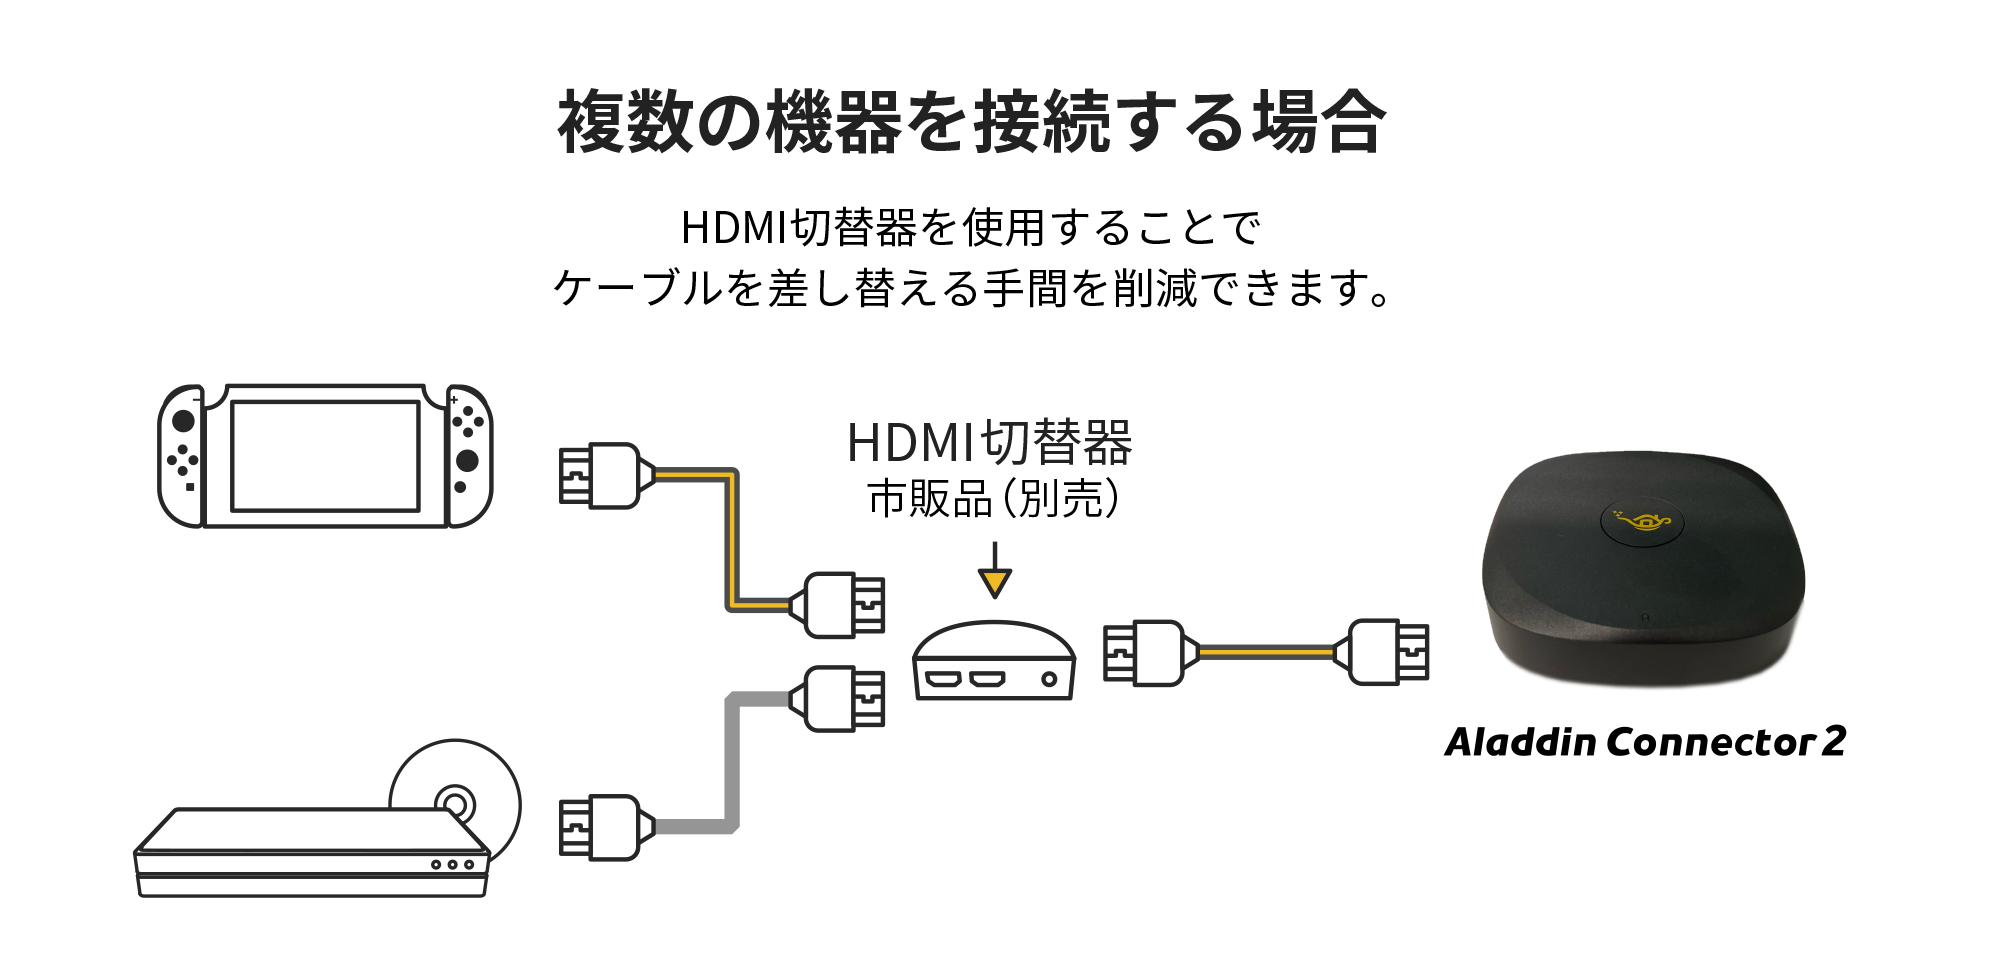 複数の機器を接続する場合は市販品のHDMI切り替え機を使用するとケーブル差し替えの手間を削減できます